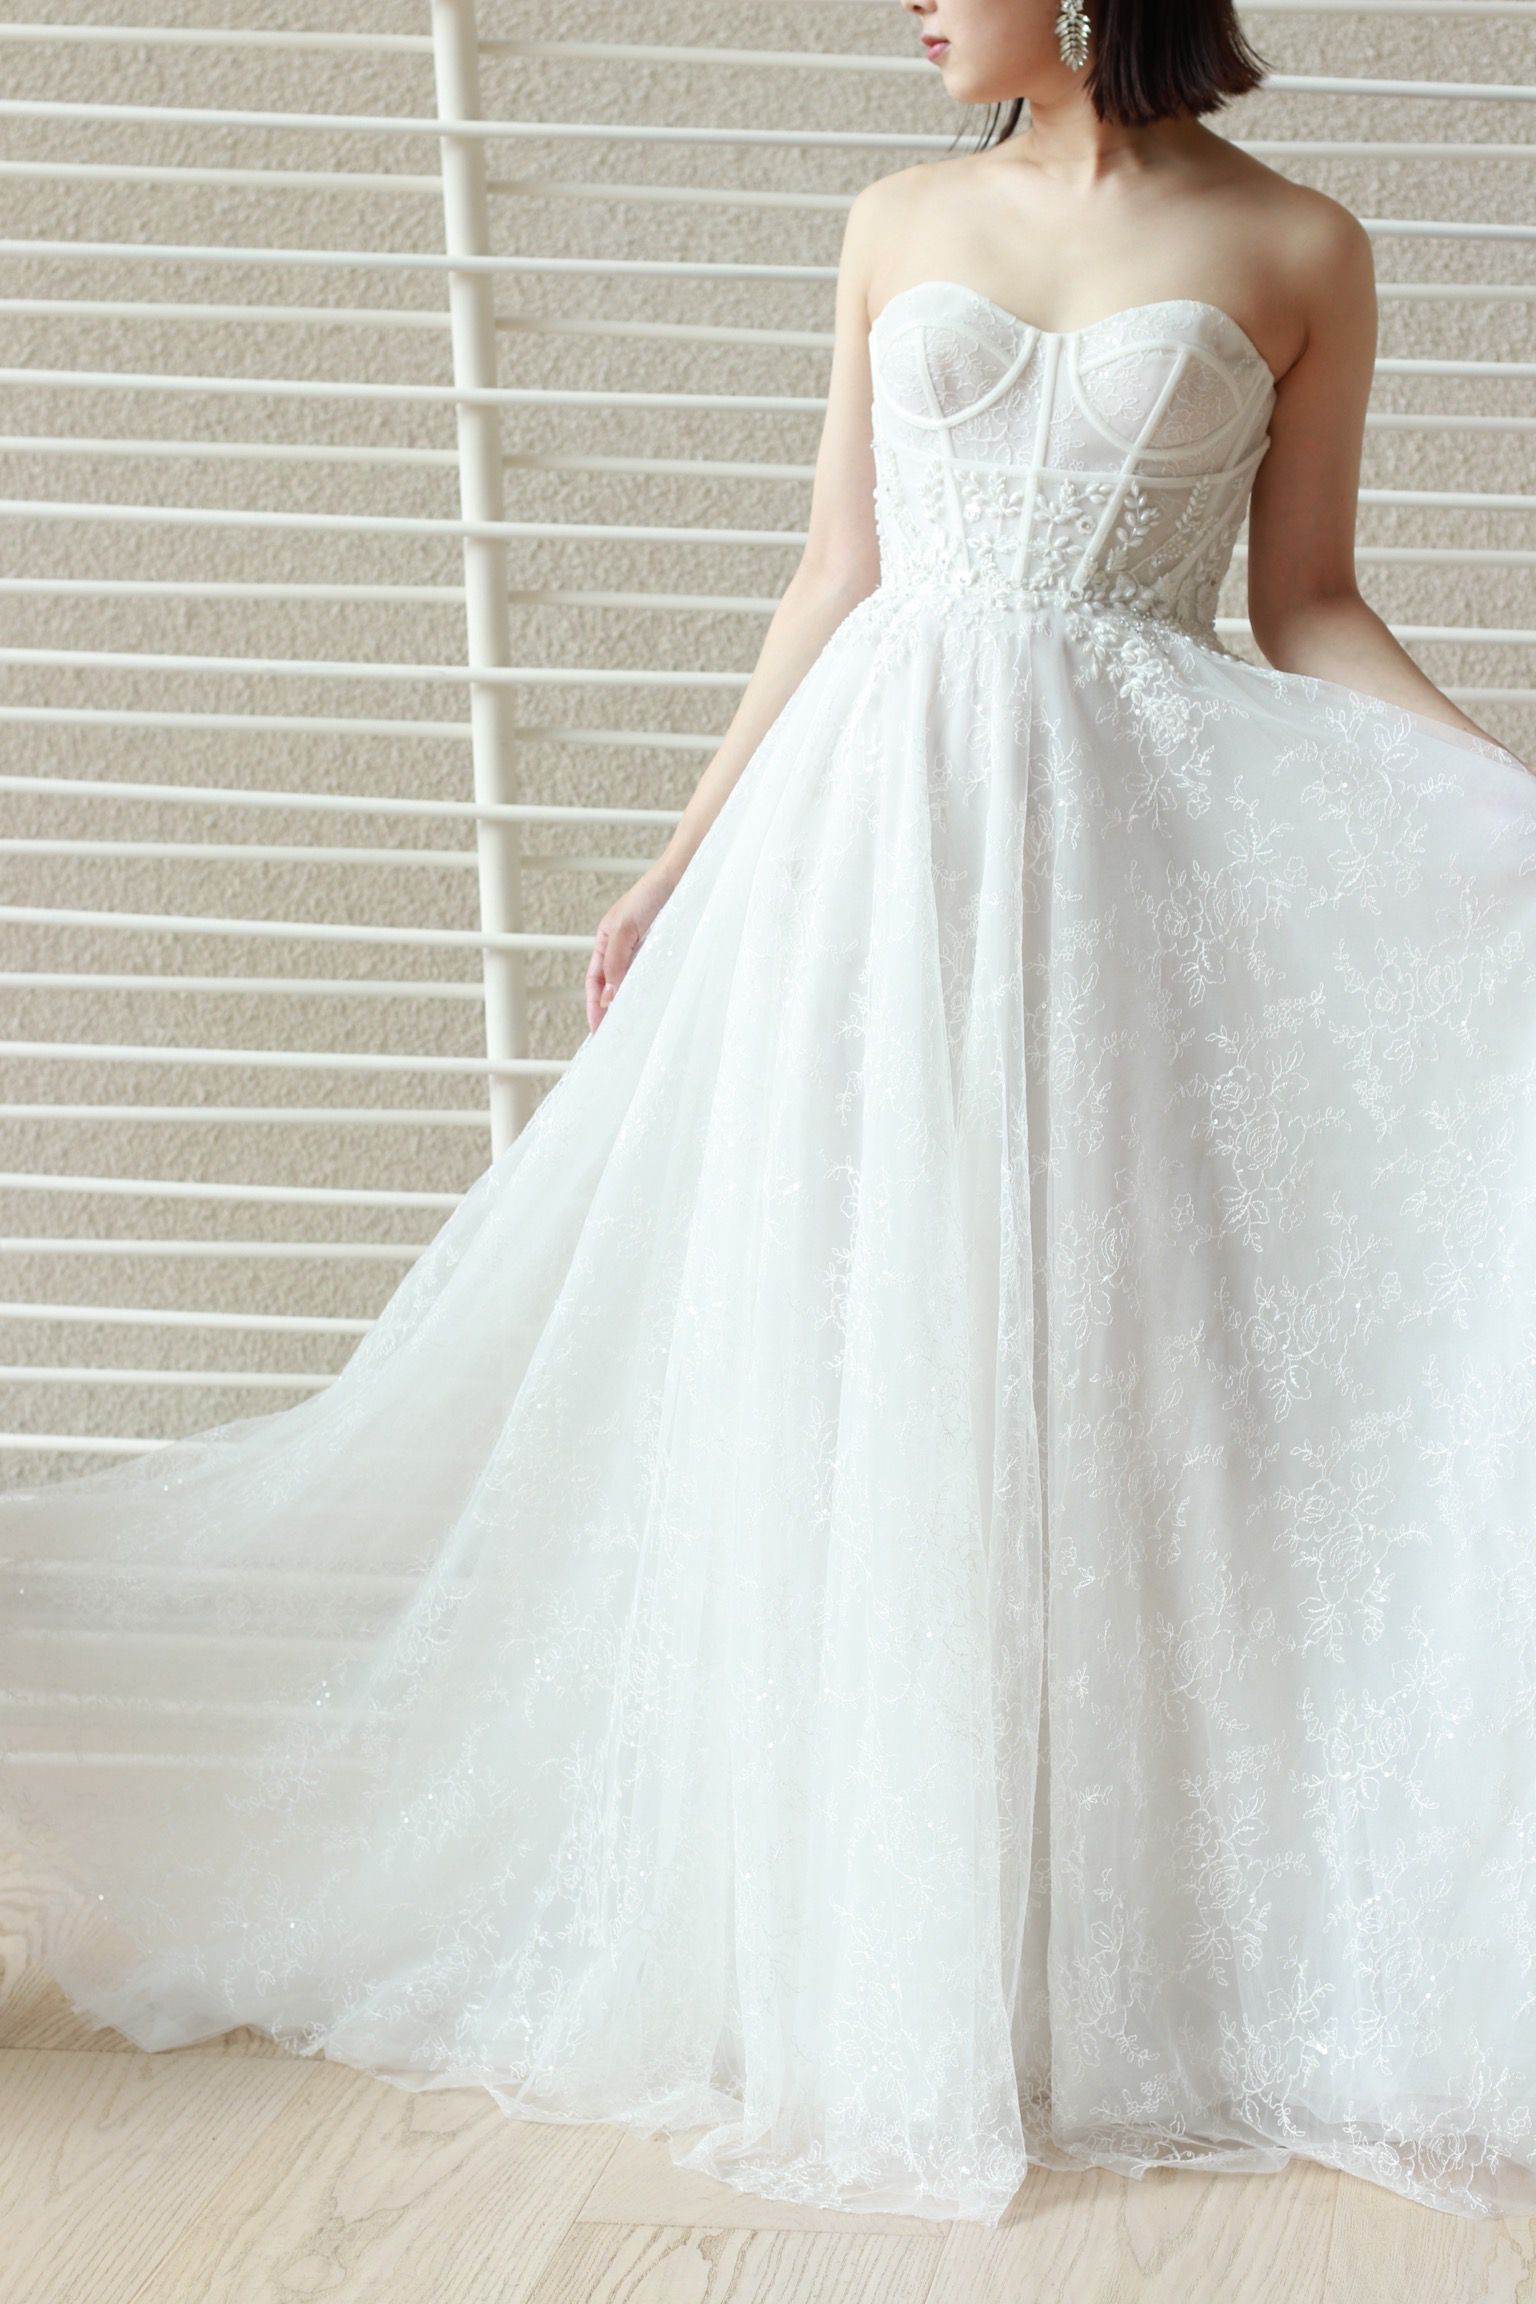 Aラインのウェディングドレスはいつの時代も花嫁に愛される美しいシルエットです。そのラインにトレンド感溢れるリズマルチネスの装飾を施すことでおしゃれな印象を表現できます。